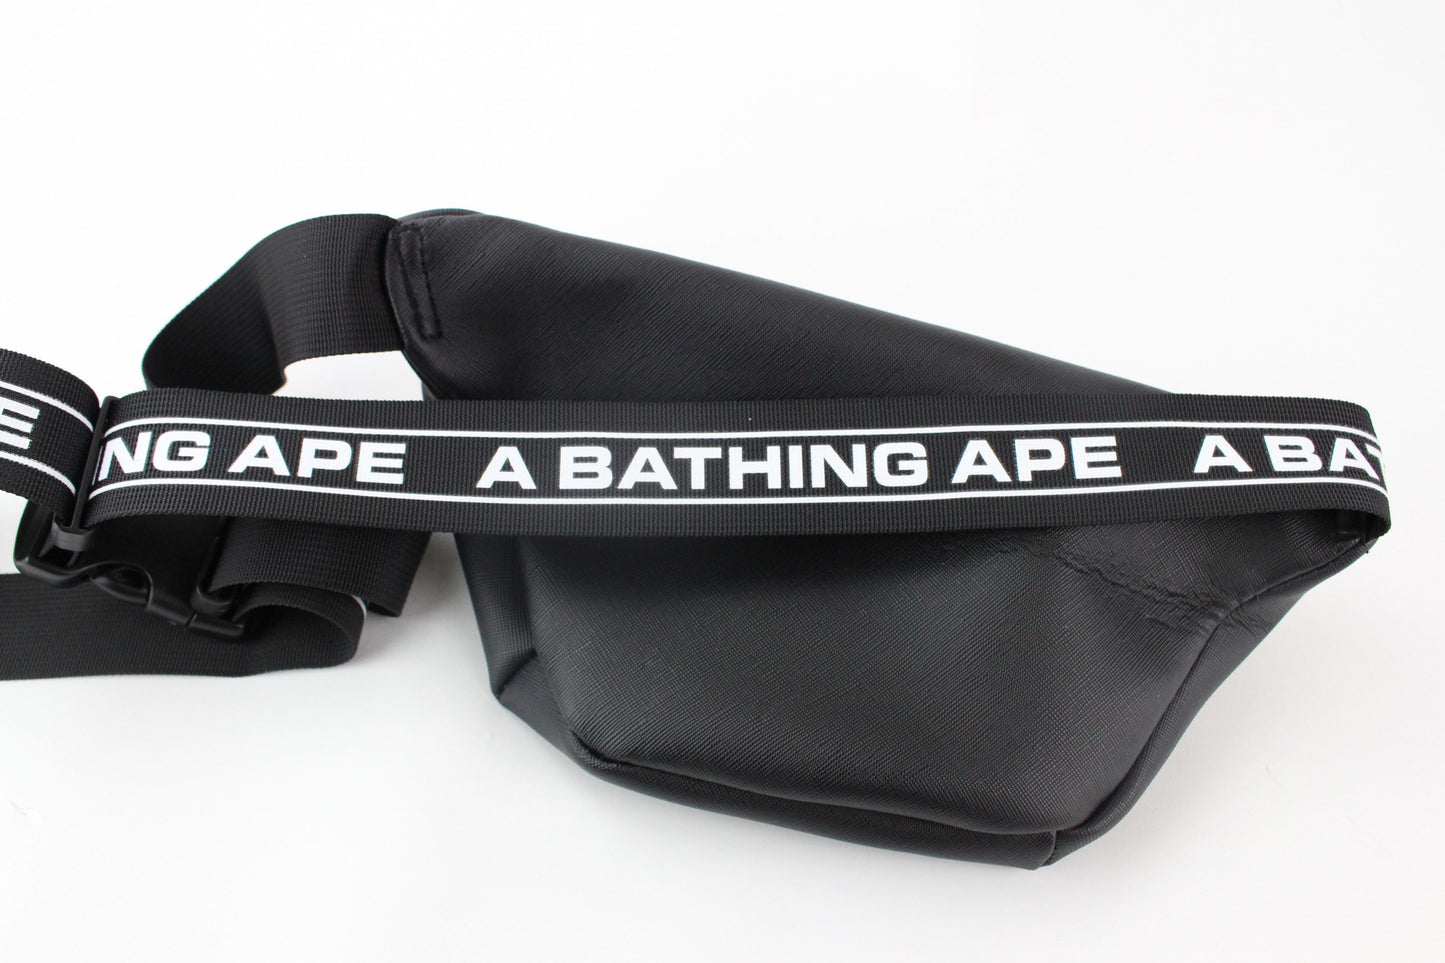 Bape Black A Bathing Ape Hip Bag - SaruGeneral